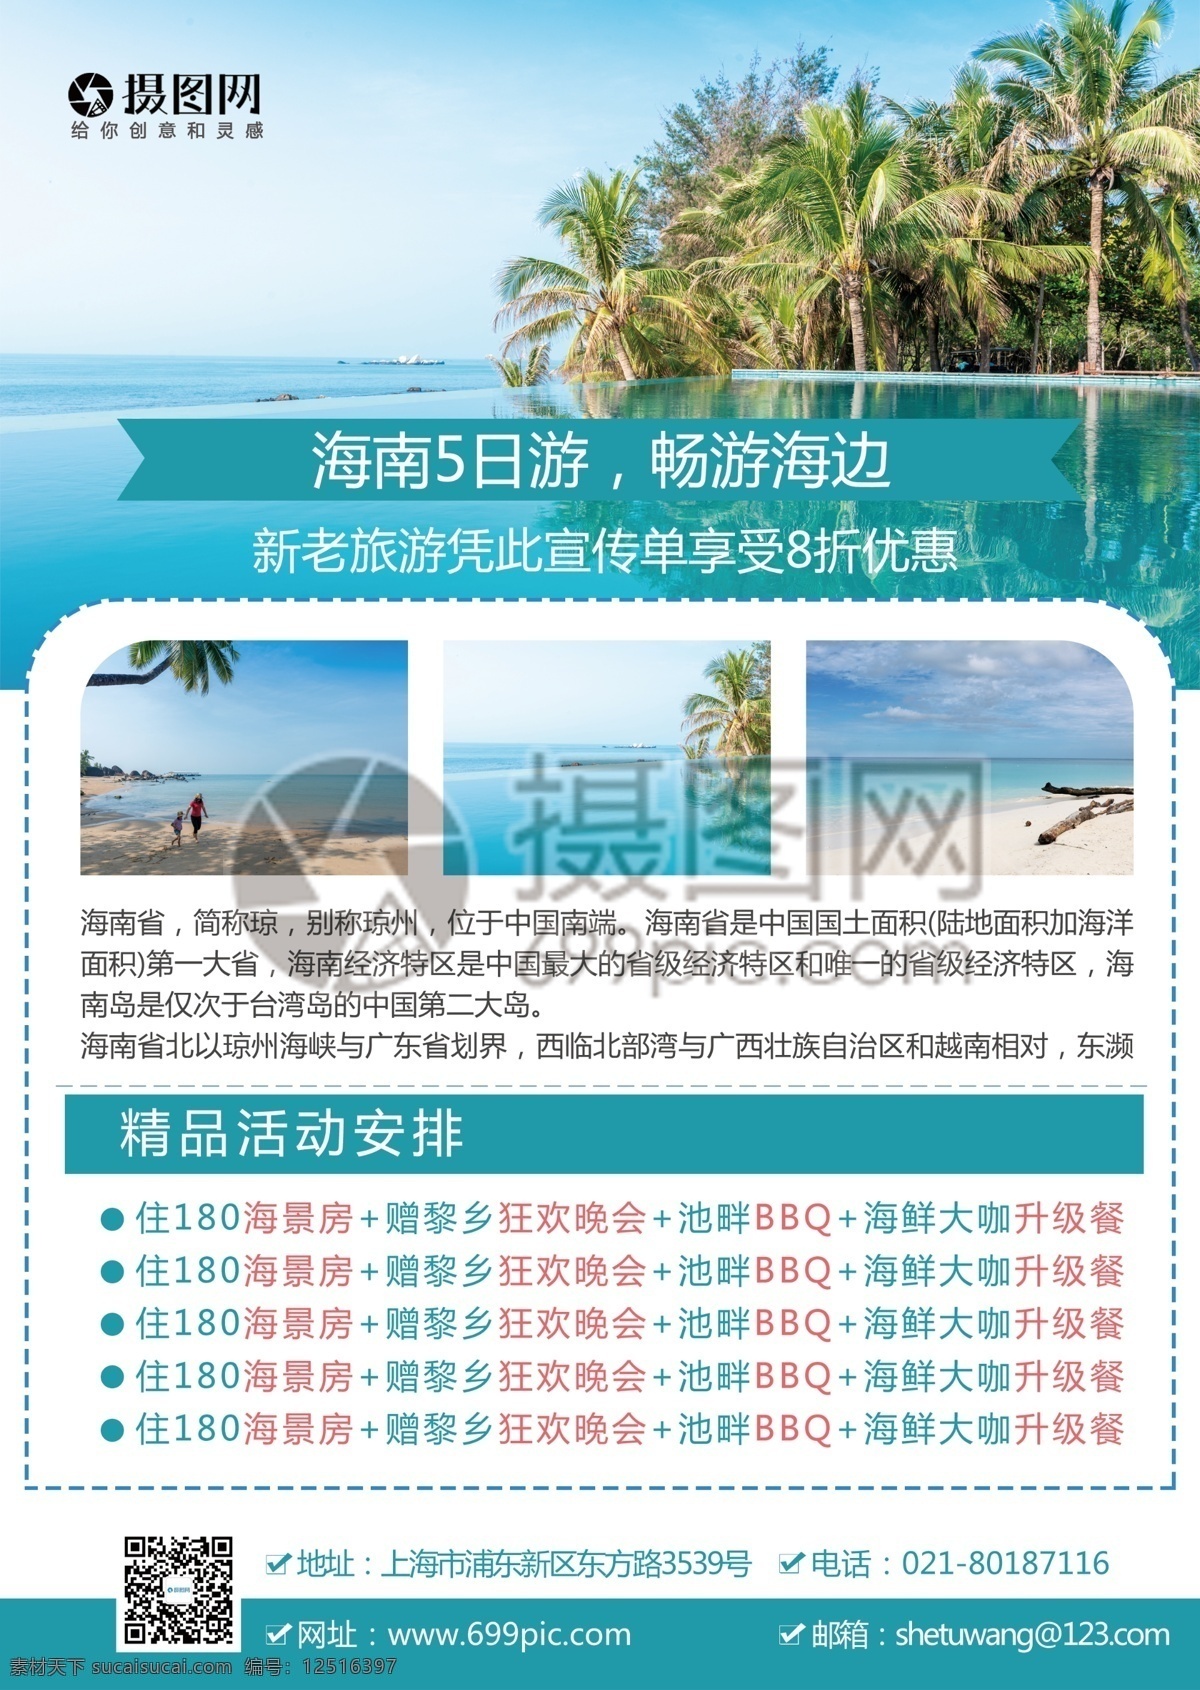 海南旅游 宣传单 海南 海 沙滩 游玩 旅游 旅行 国内游 跟团游 旅行社 旅游路线 风景 风光 景色